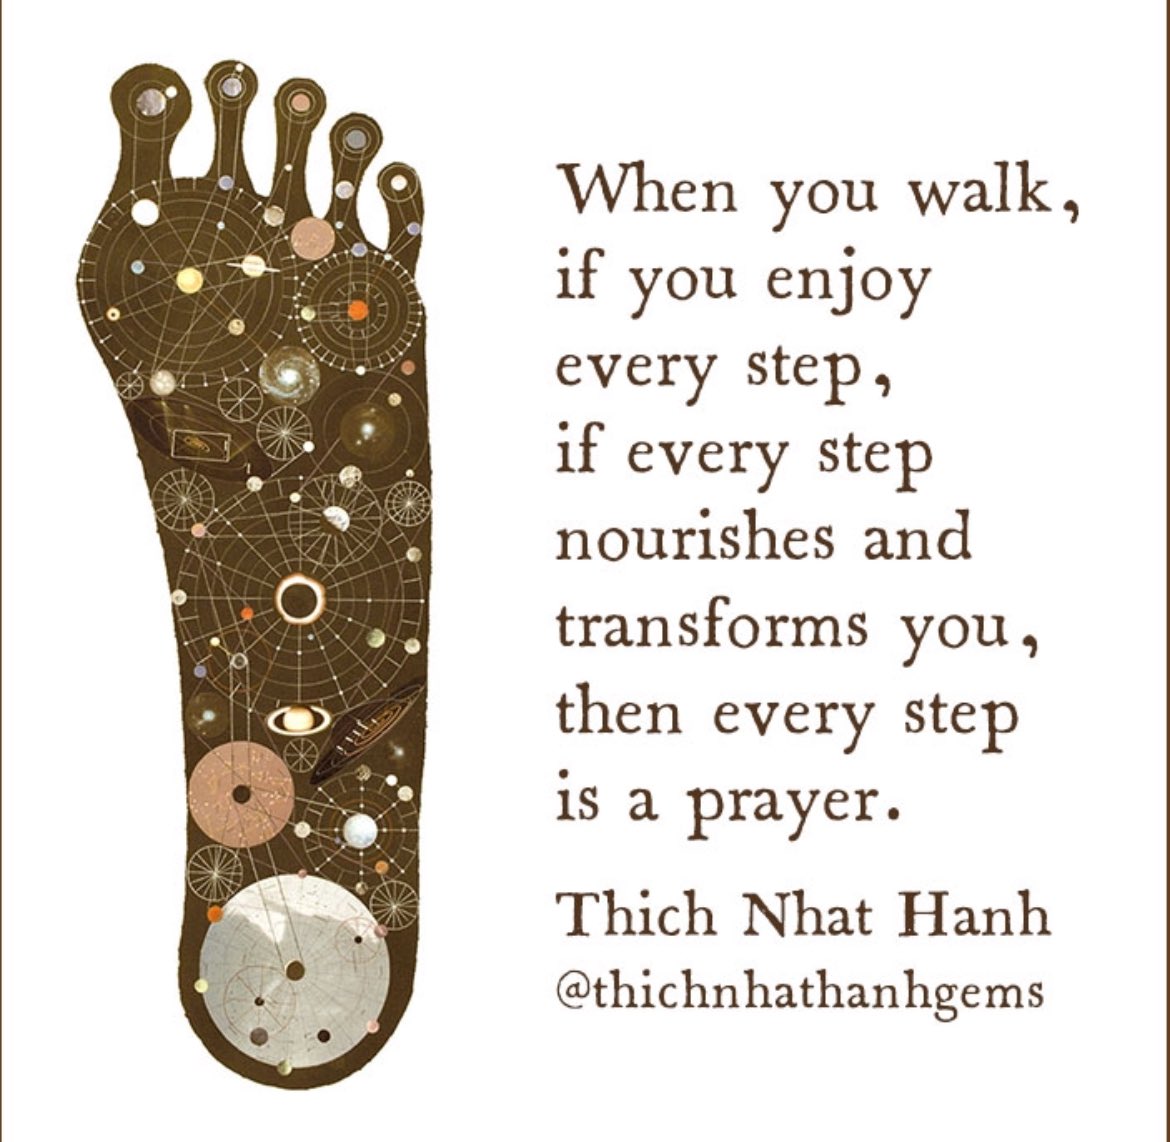 Cuando caminas, si disfrutas cada paso, si cada paso te nutre y transforma, entonces cada paso es una oración.
#ThichNhatHanh

Art: Carlos Estevez